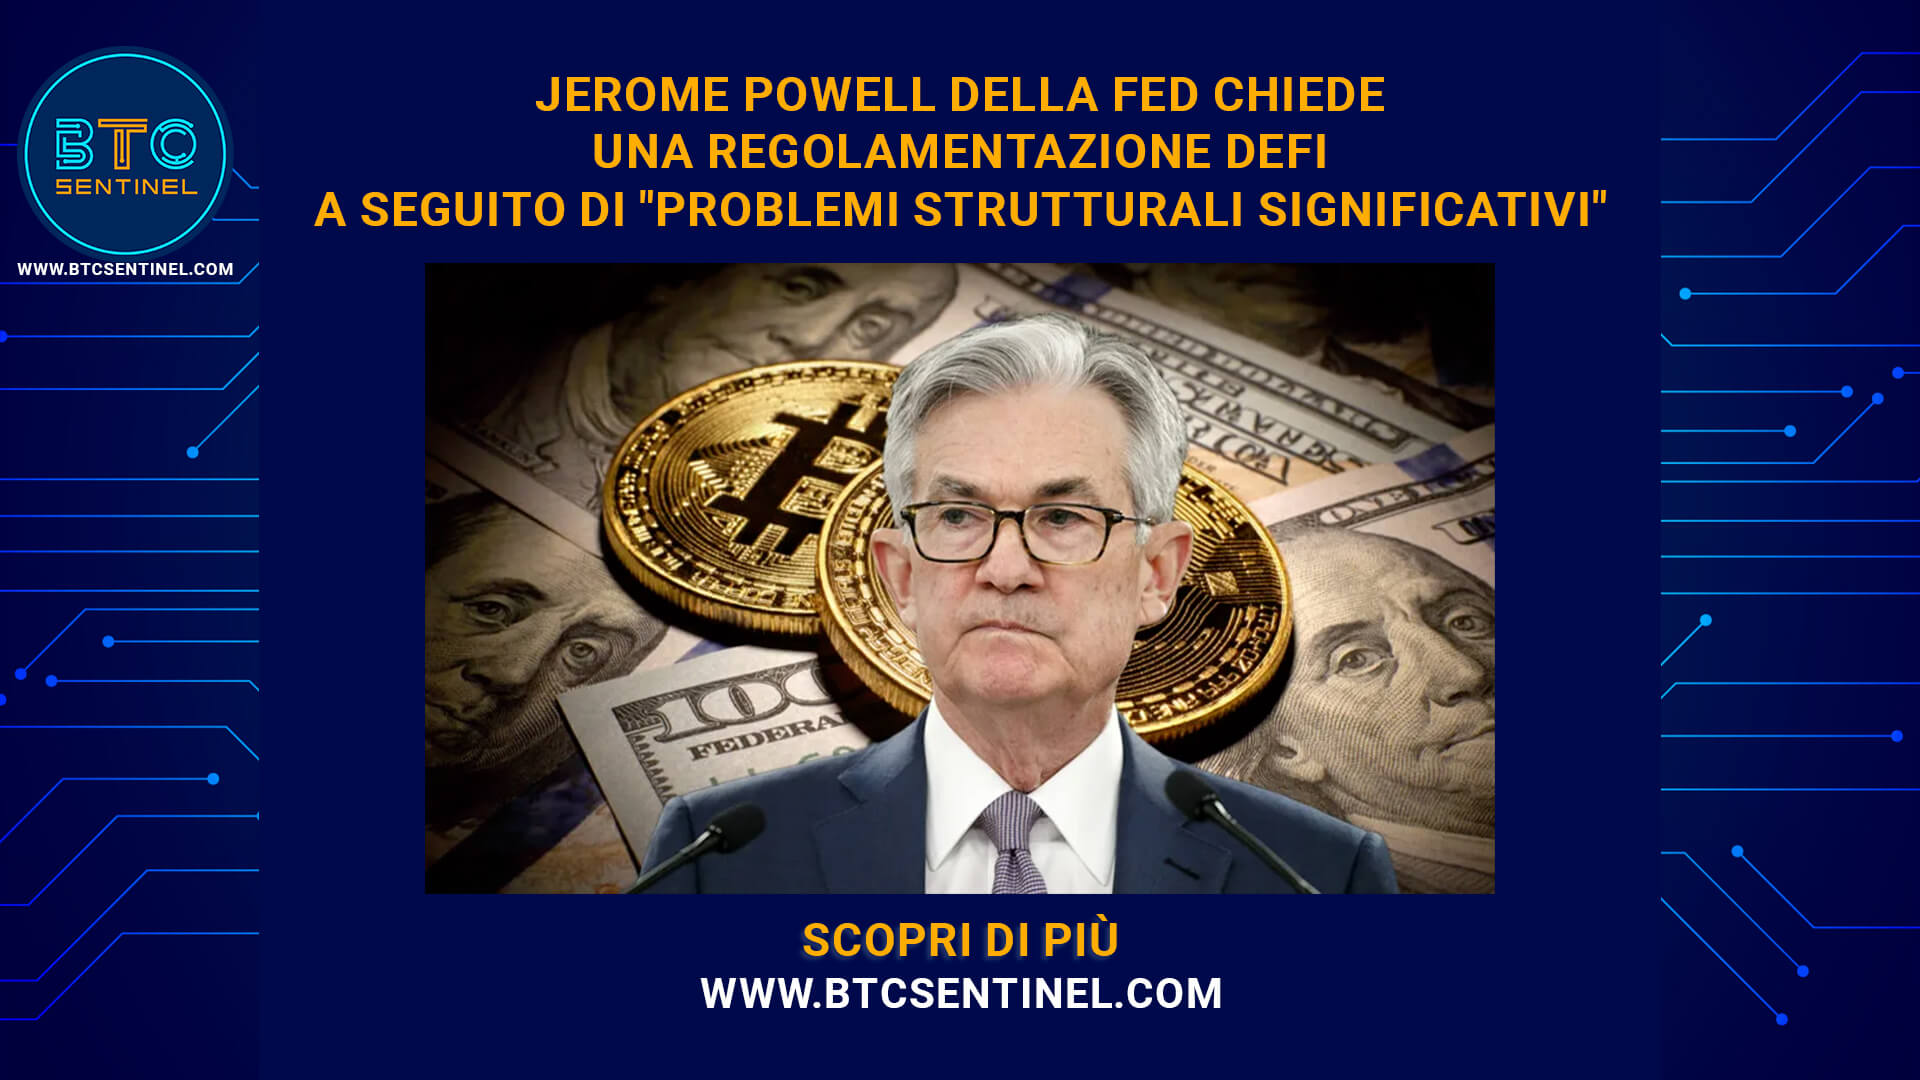 Powell della Fed chiede una regolamentazione DeFi